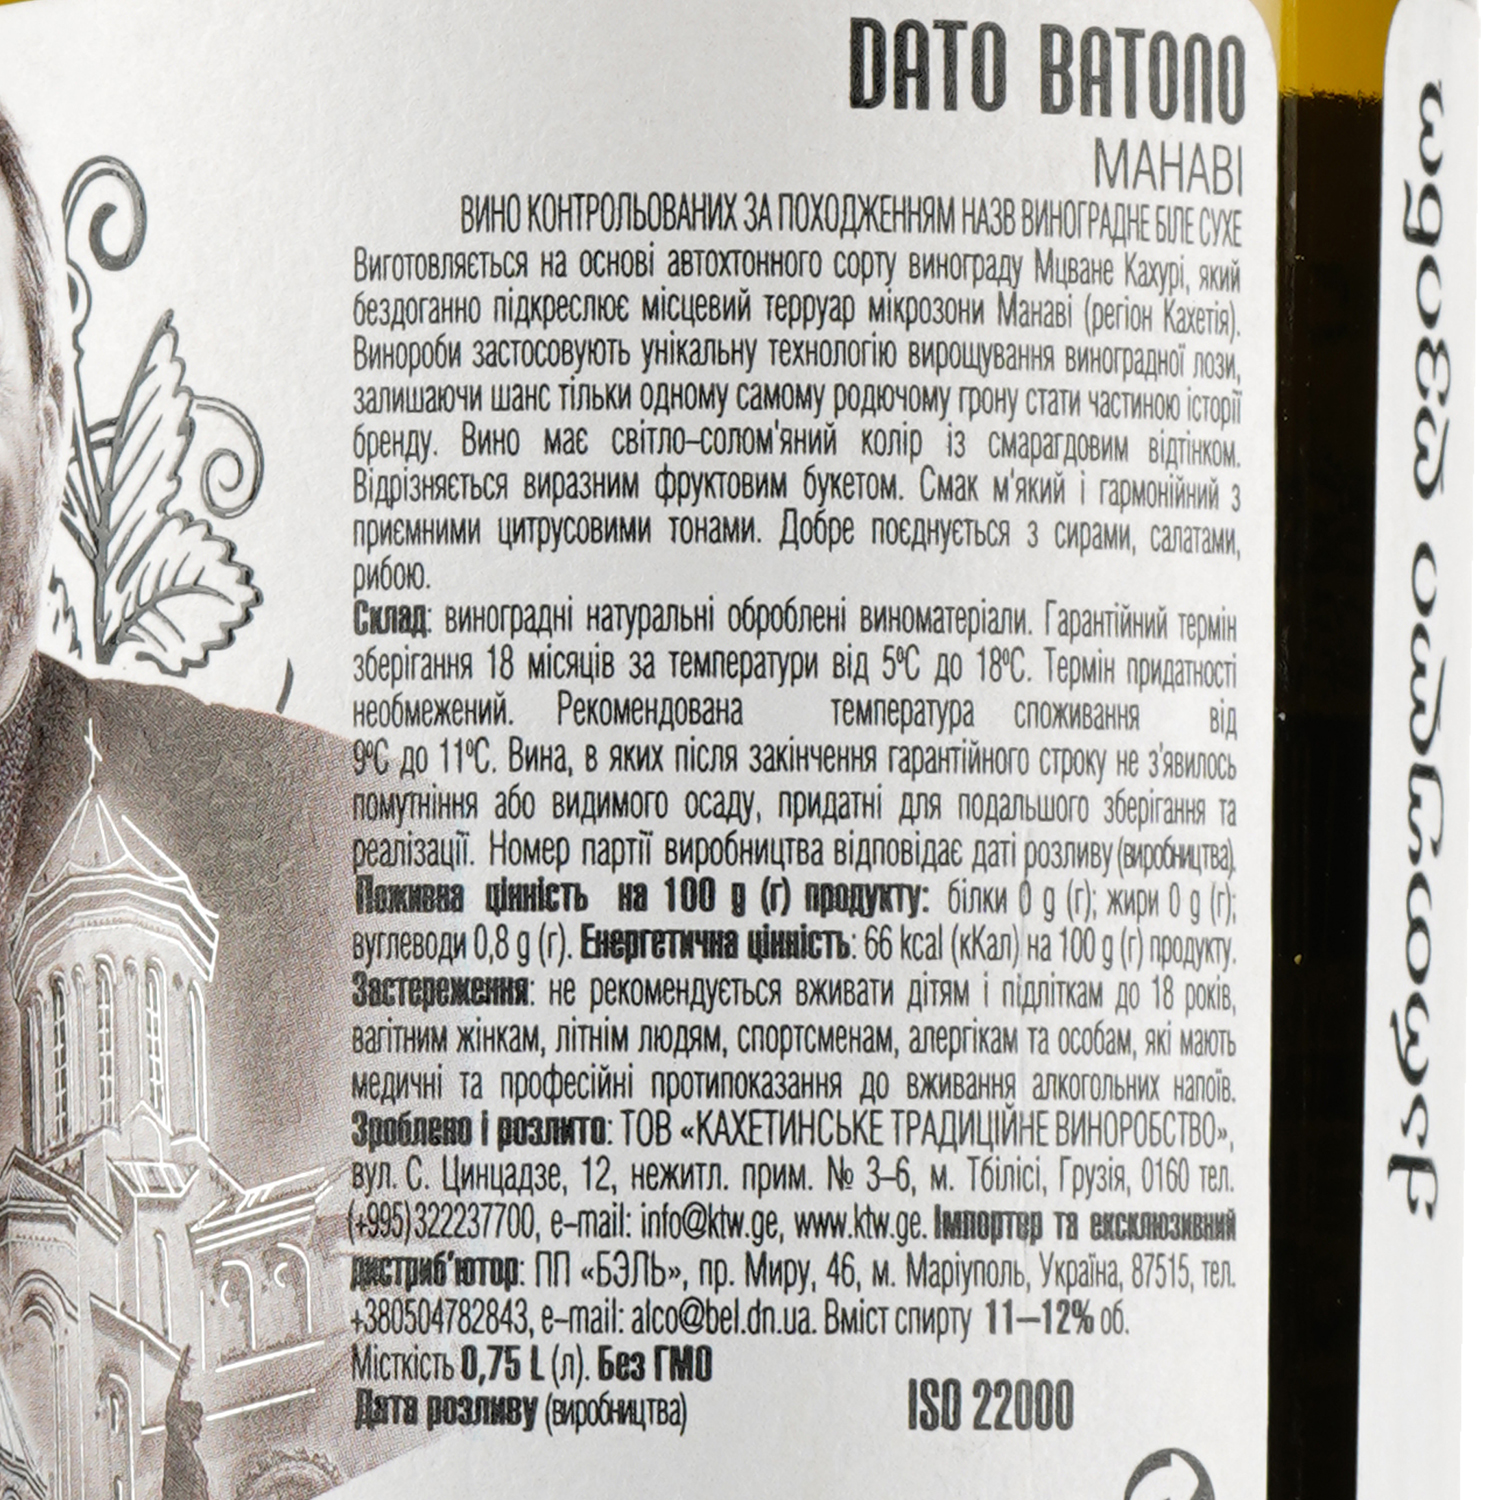 Вино Dato Batono Manavi, біле, сухе, 11-12%, 0,75 л (854152) - фото 3